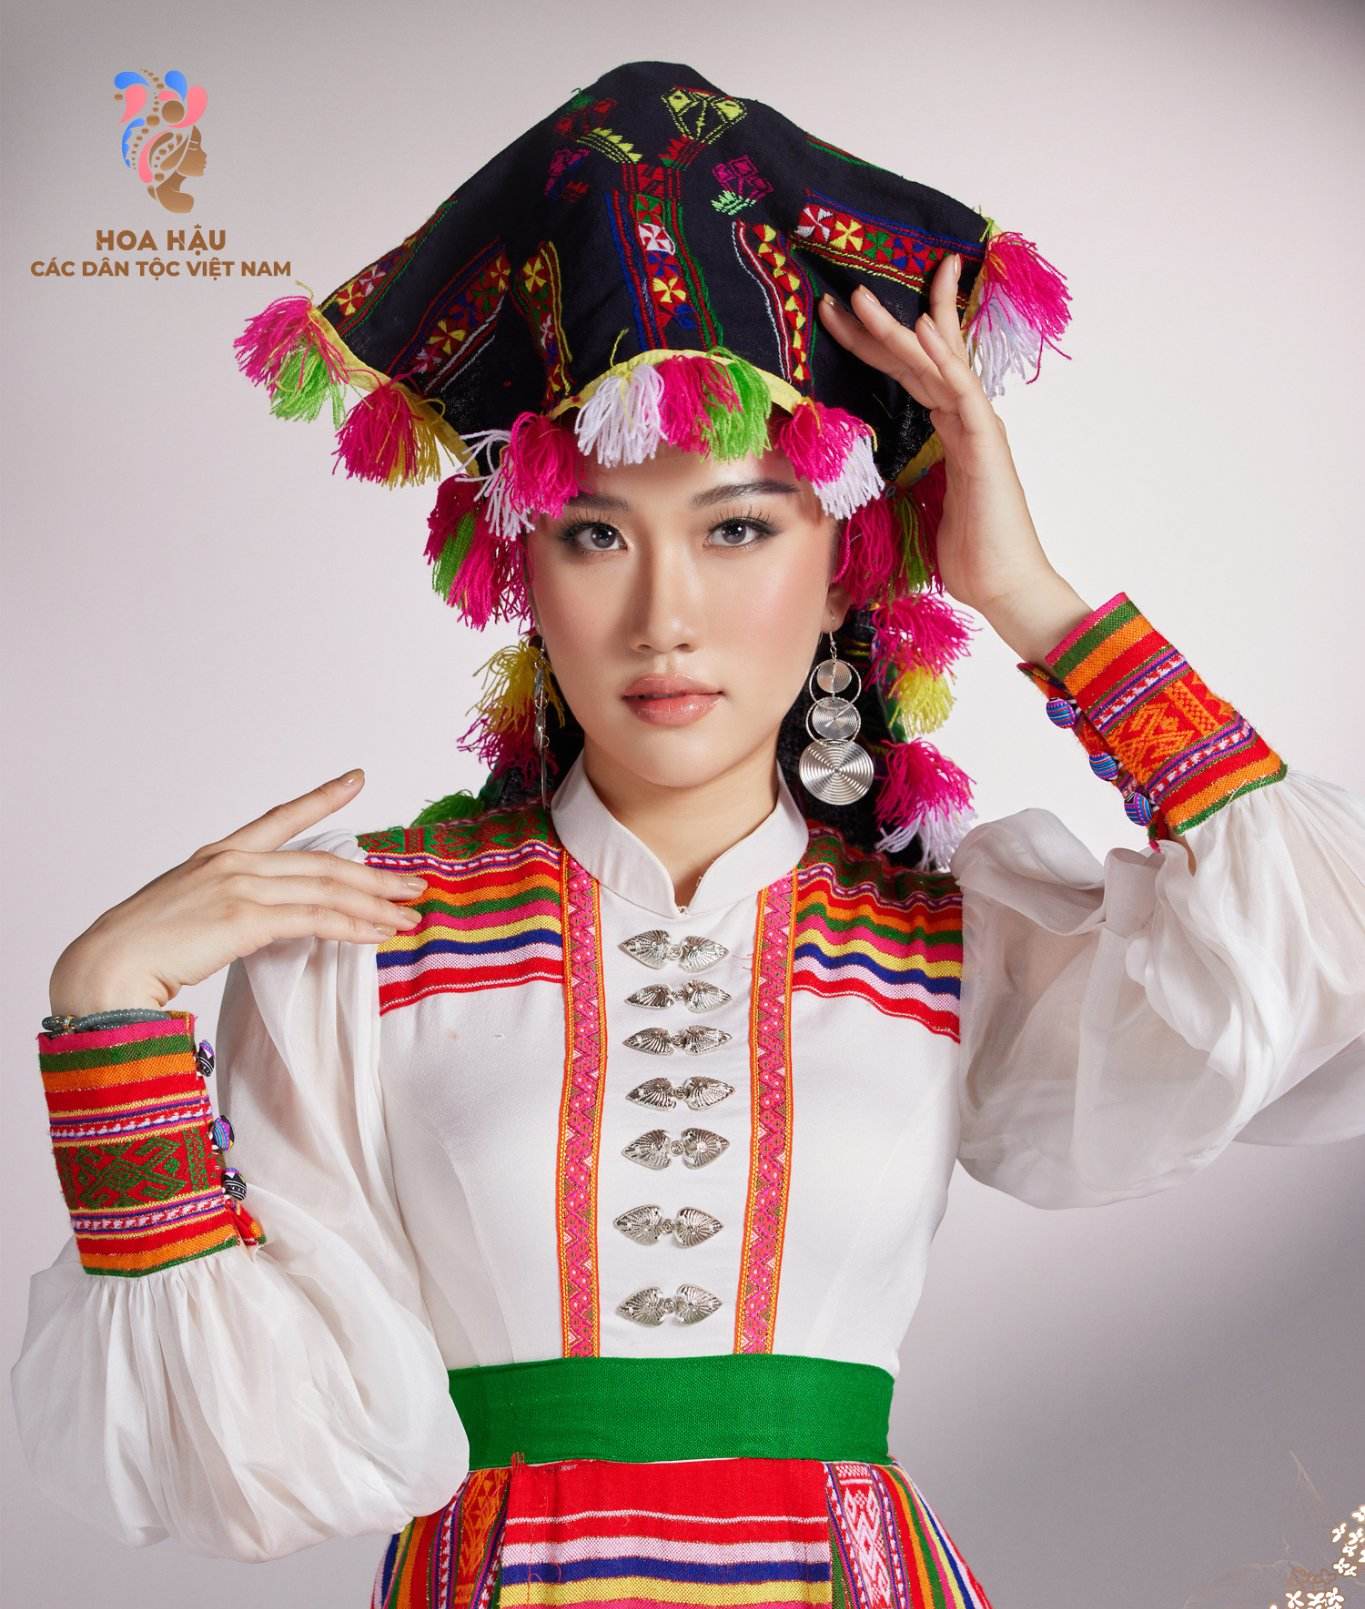 Nữ sinh dân tộc Tày xinh như mộng, được dự đoán là Hoa hậu các dân tộc Việt Nam - 5